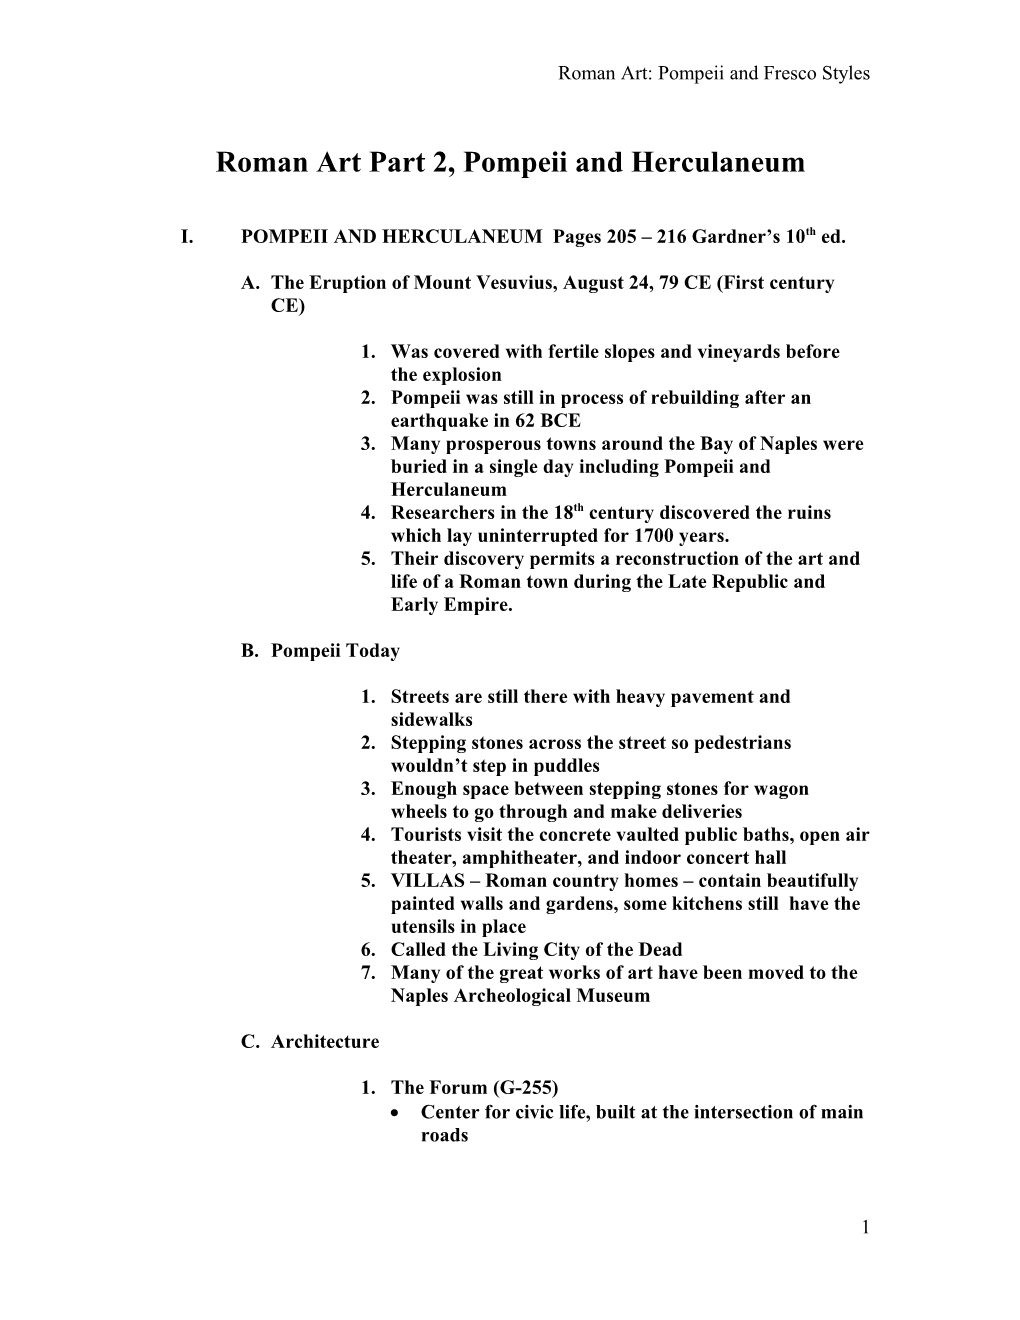 Roman Art Part 2, Pompeii and Herculaneum